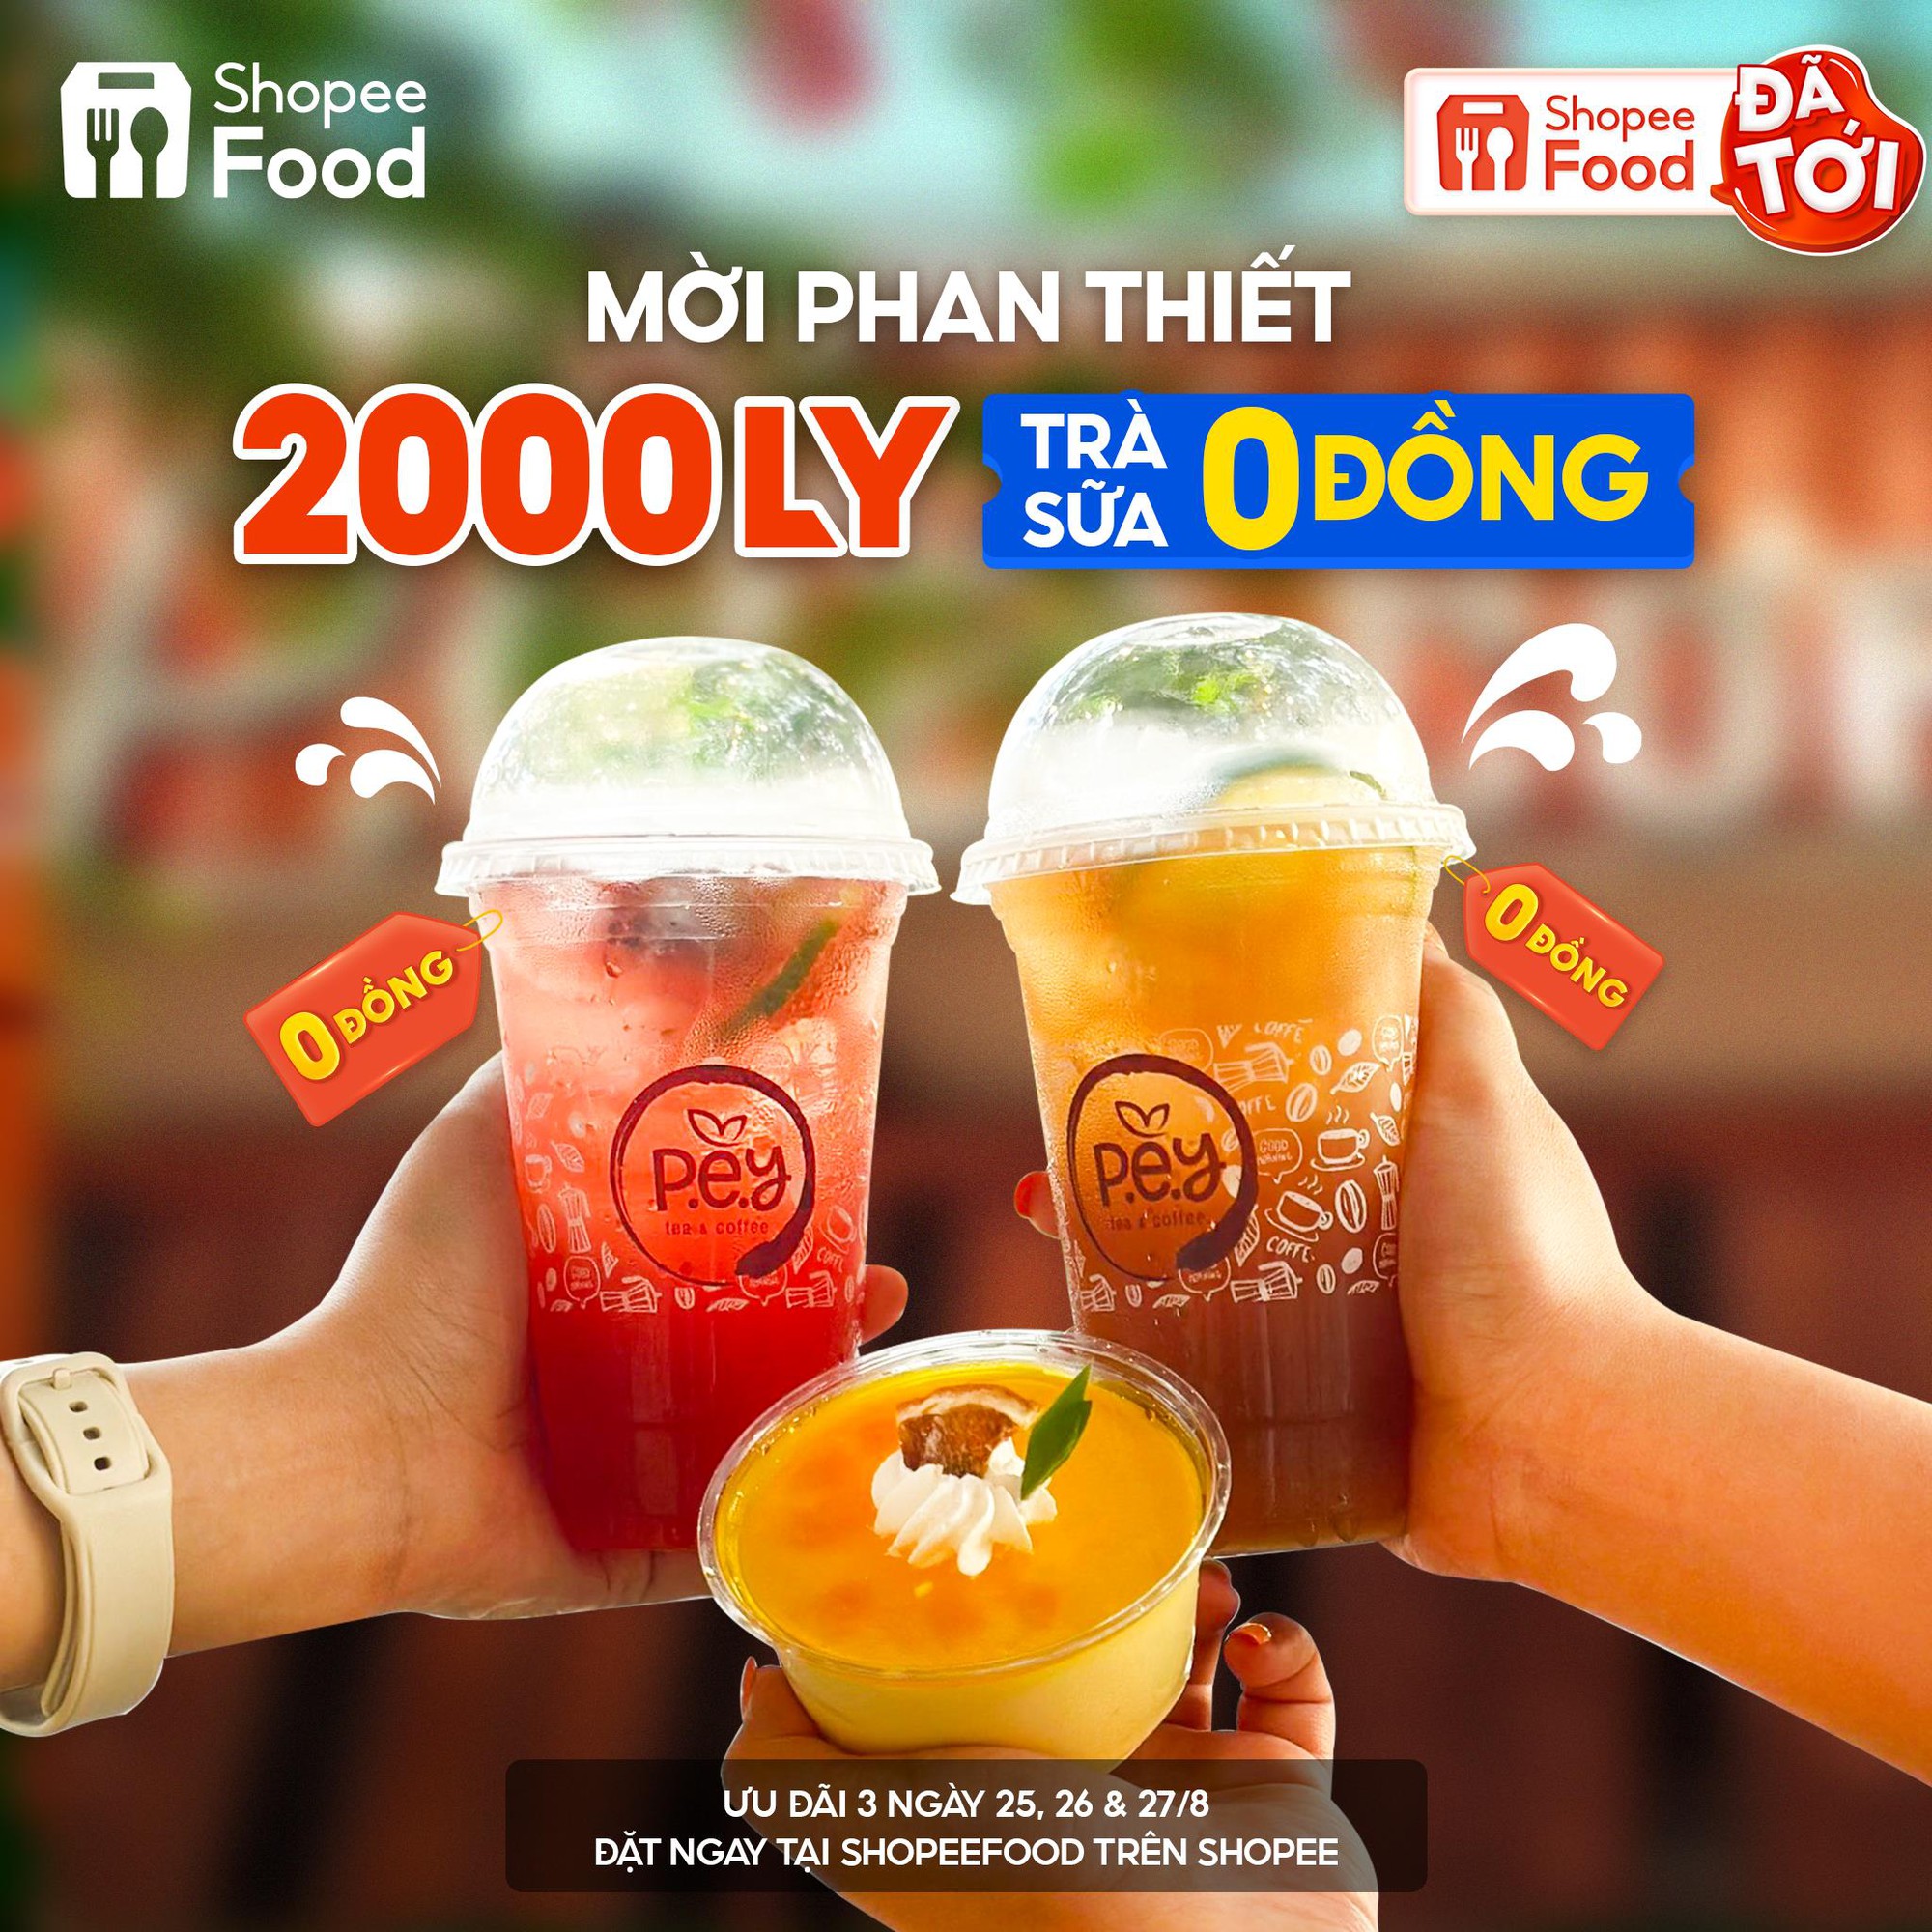 ShopeeFood chơi lớn, khao mỗi thành phố 2.000 ly trà sữa 0 đồng cho màn chào sân tại Phan Thiết, Quy Nhơn - Ảnh 4.